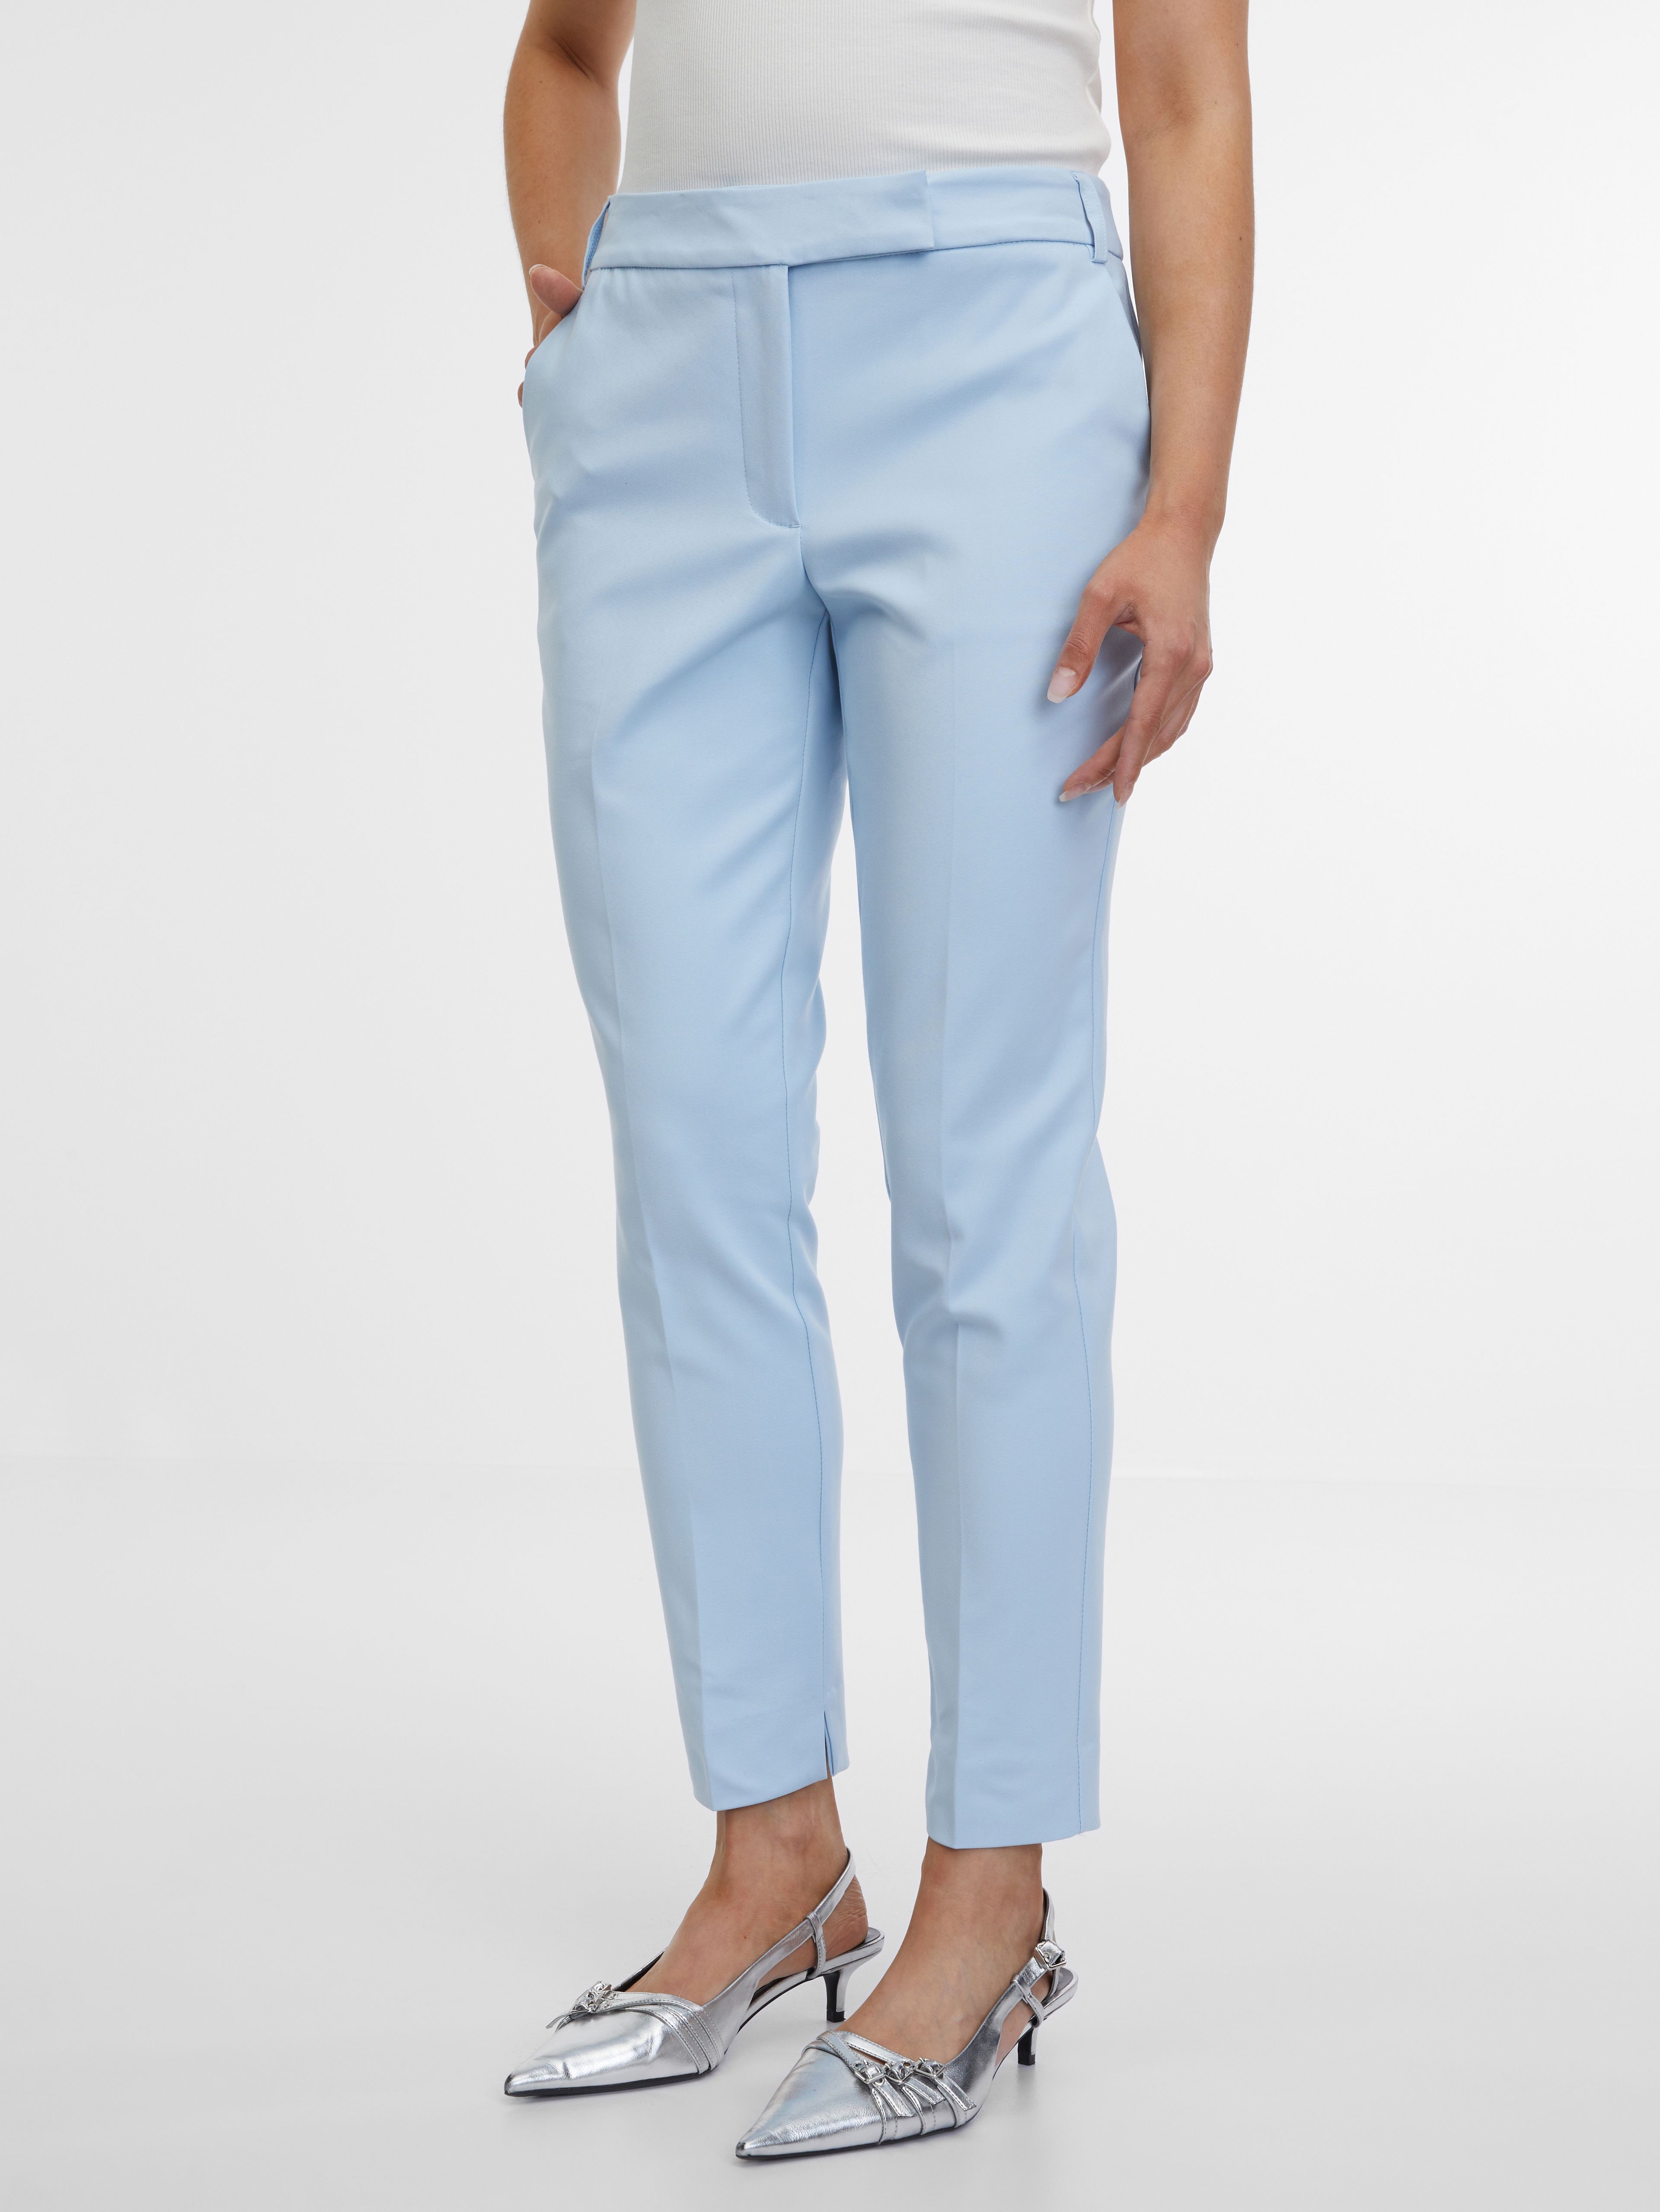 Světle modré dámské kalhoty ORSAY